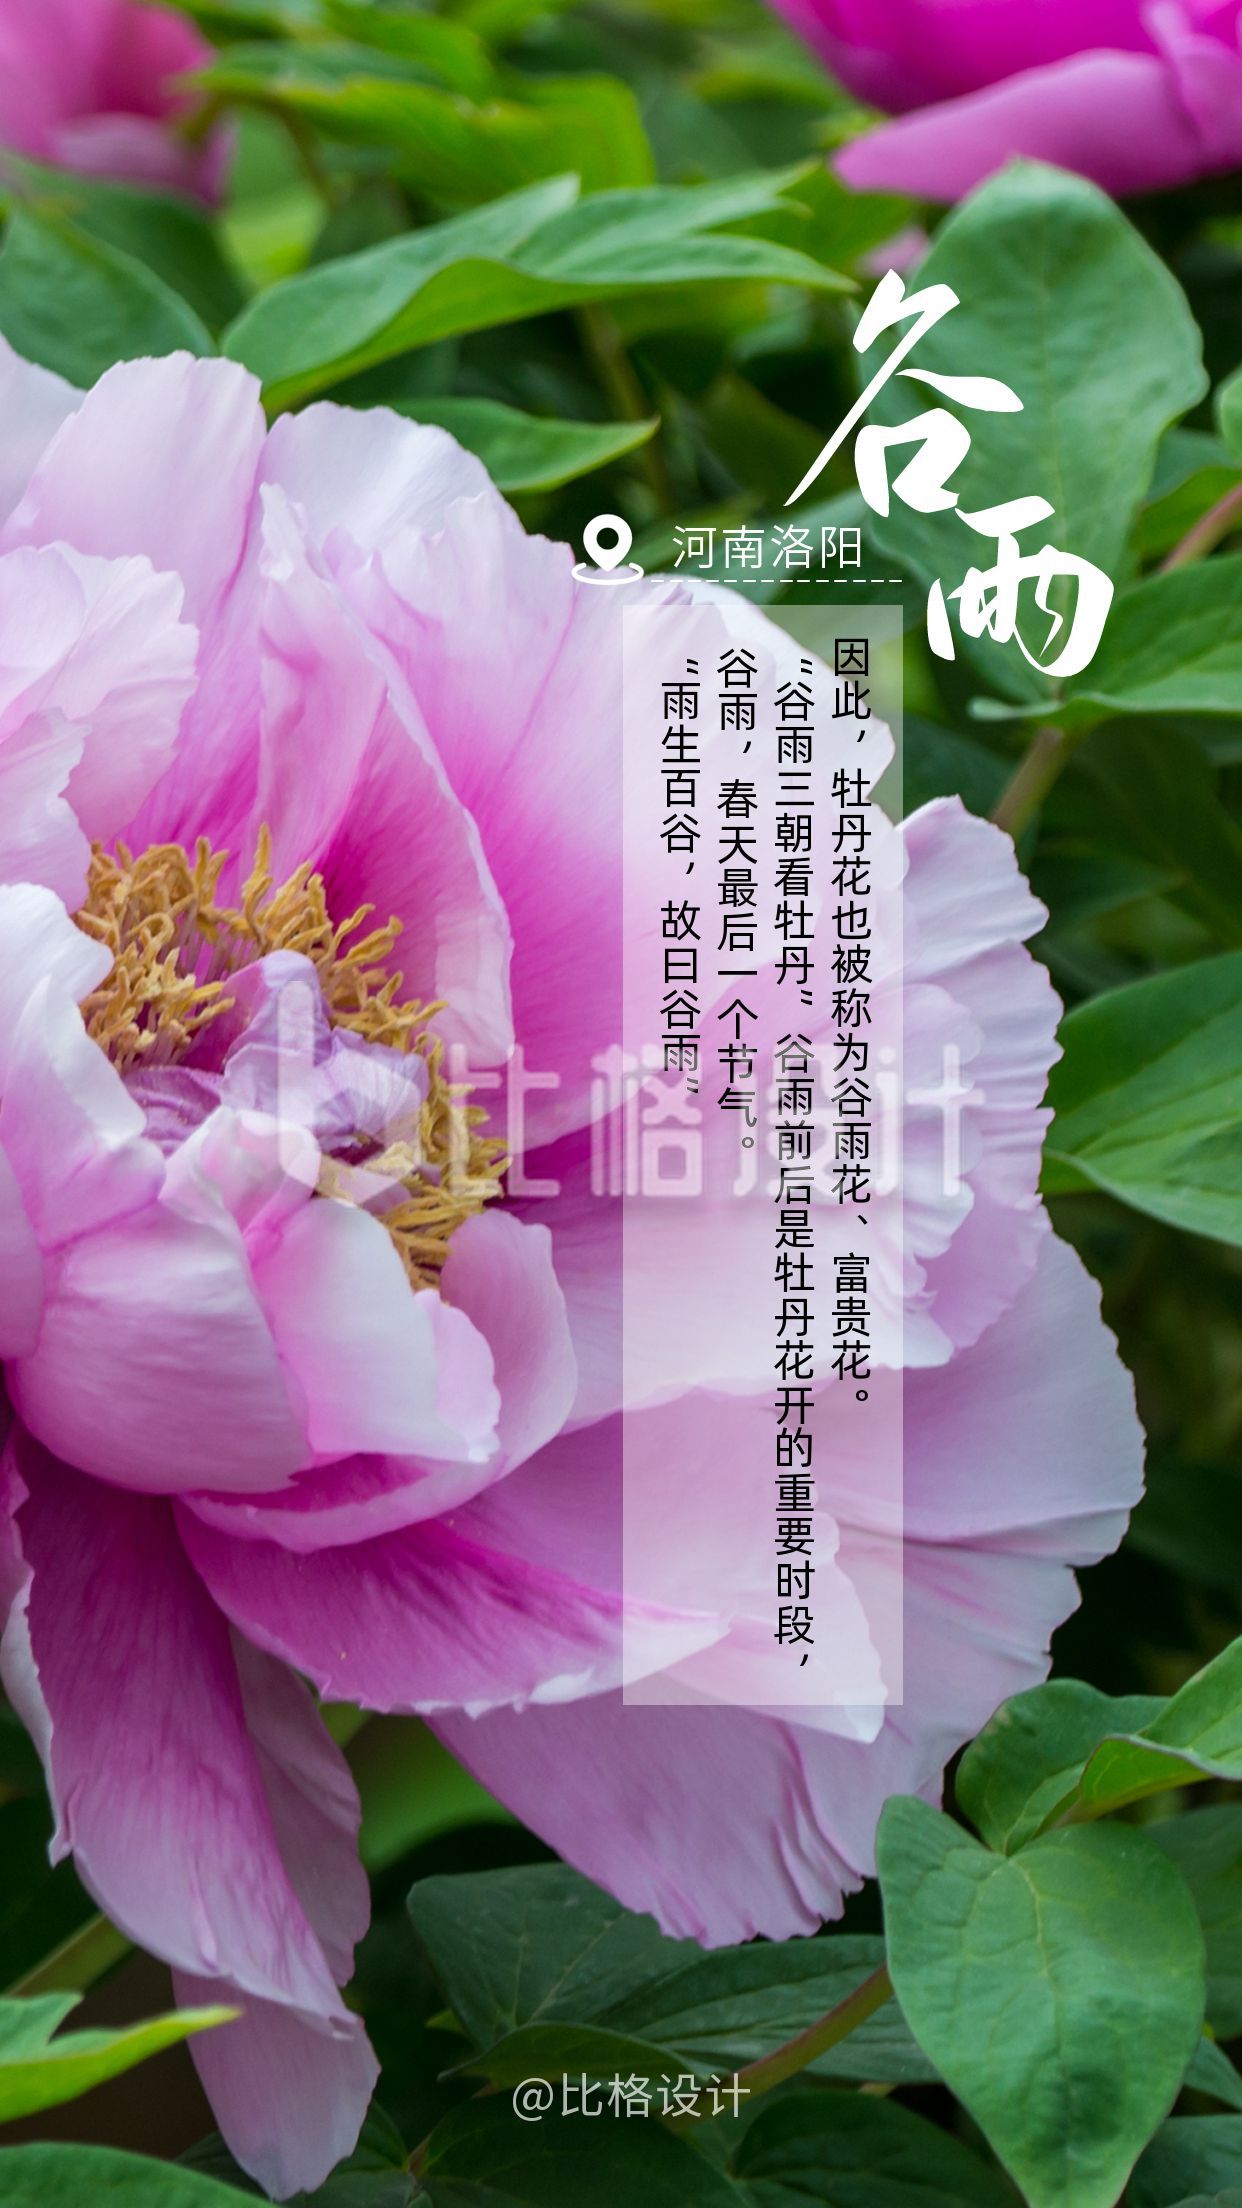 谷雨节气赏牡丹花实景美图手机海报